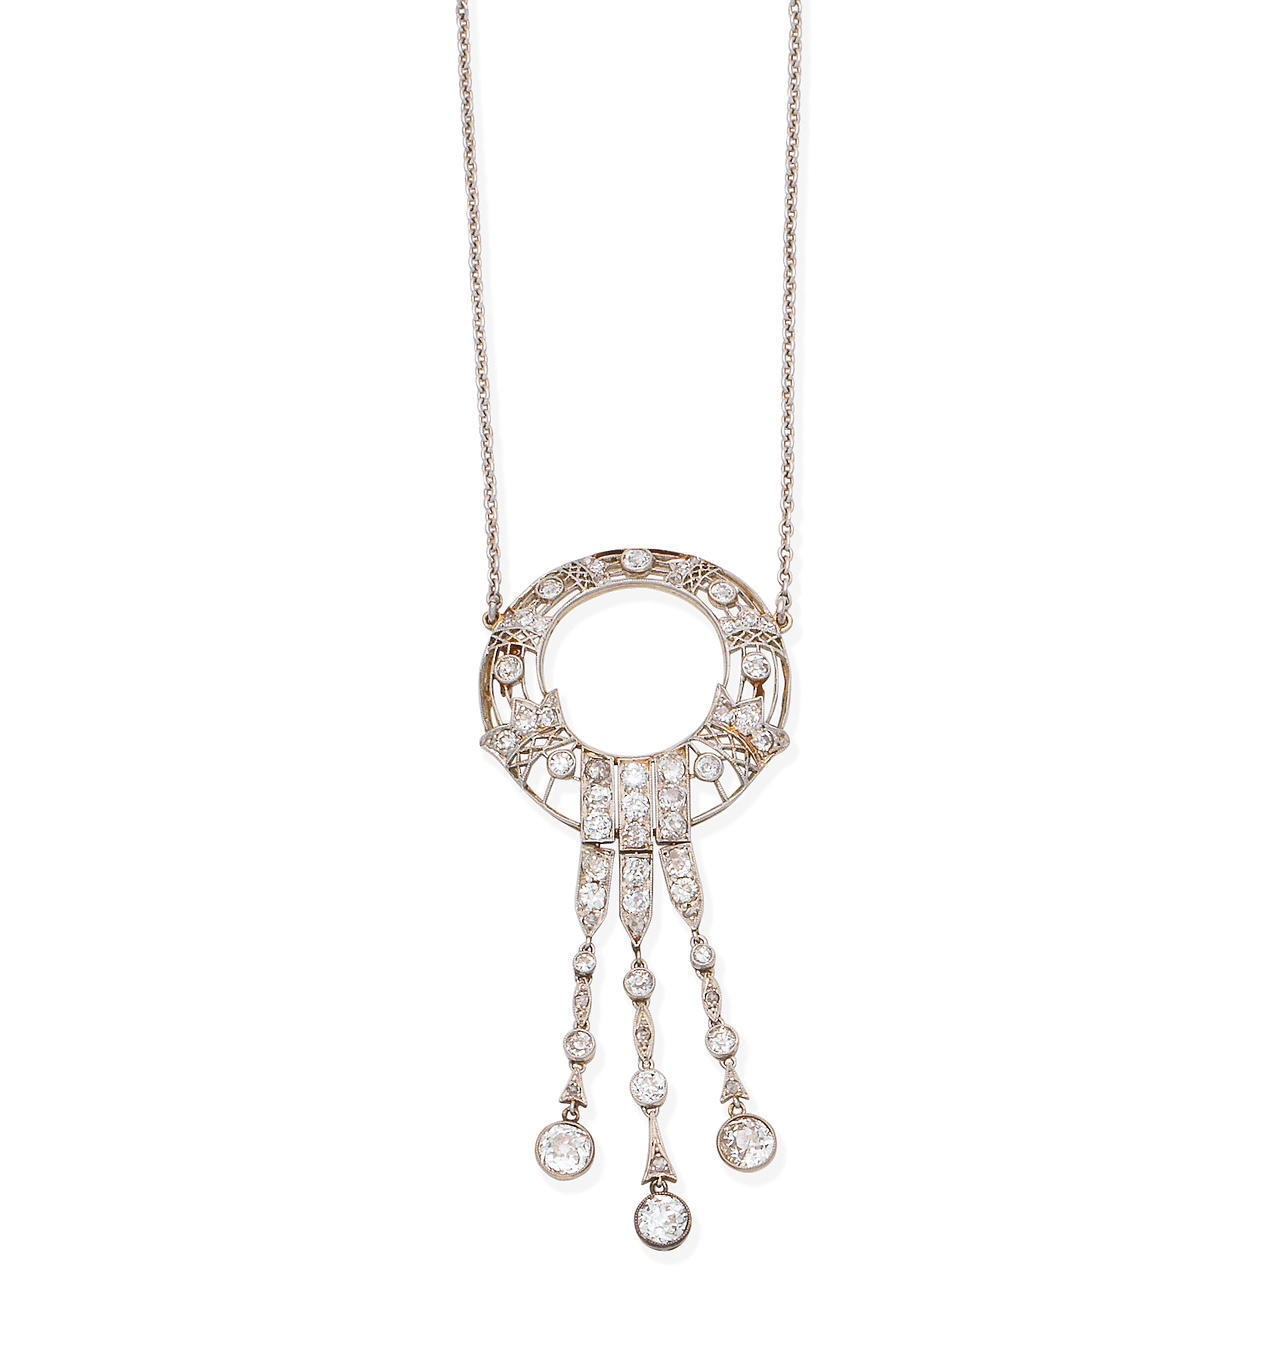 A Belle Époque diamond pendant necklace,